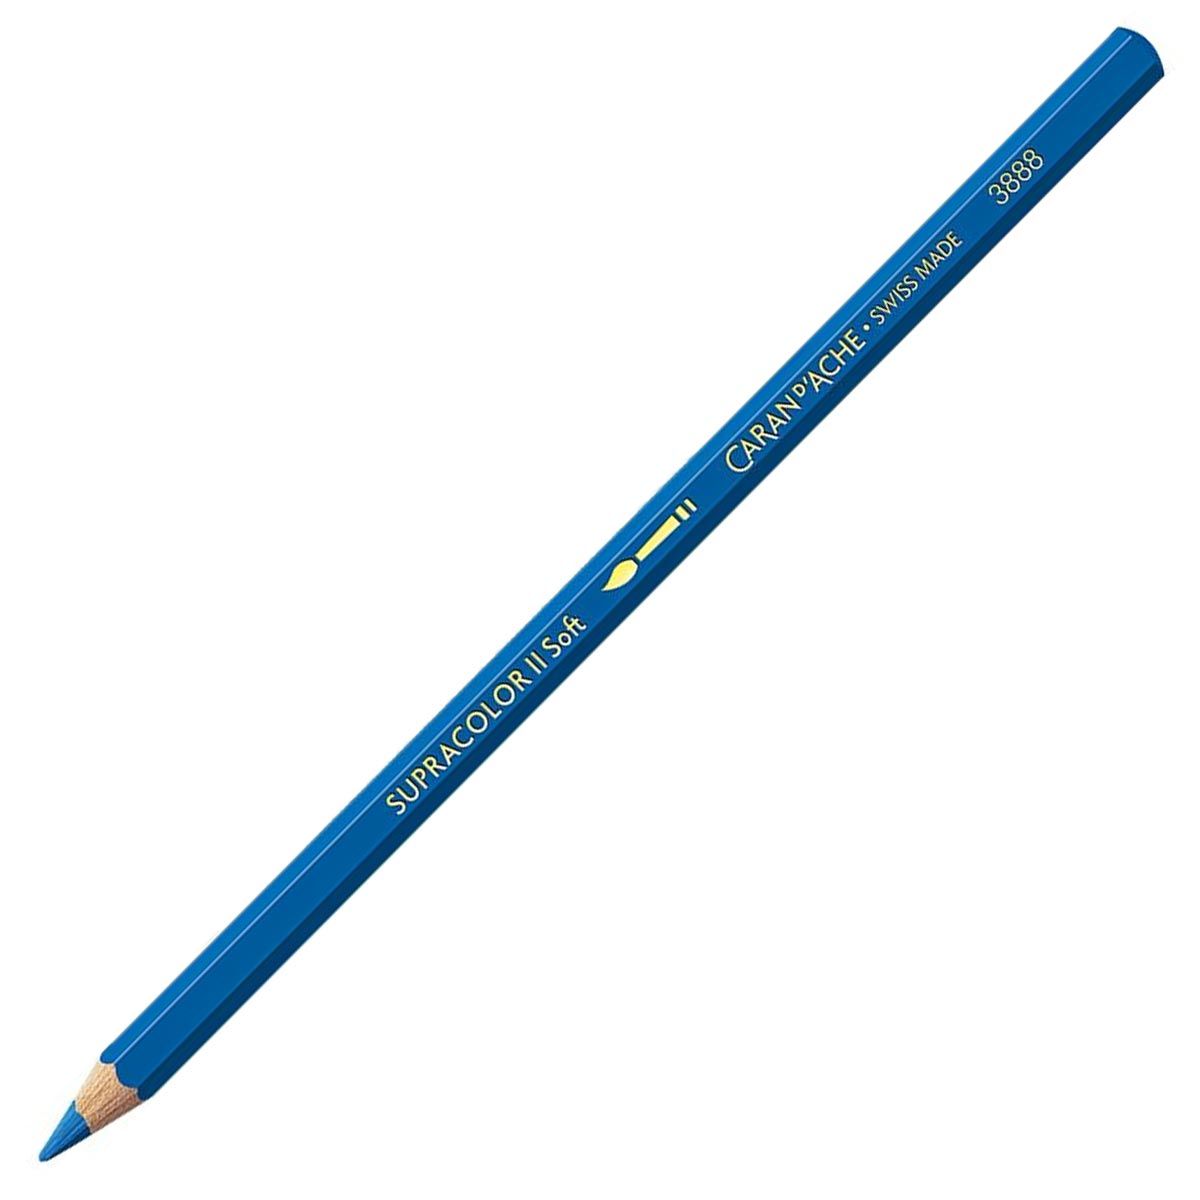 Caran d'Ache Supracolor ll Soft Aquarelle Pencil - Gentian Blue 370